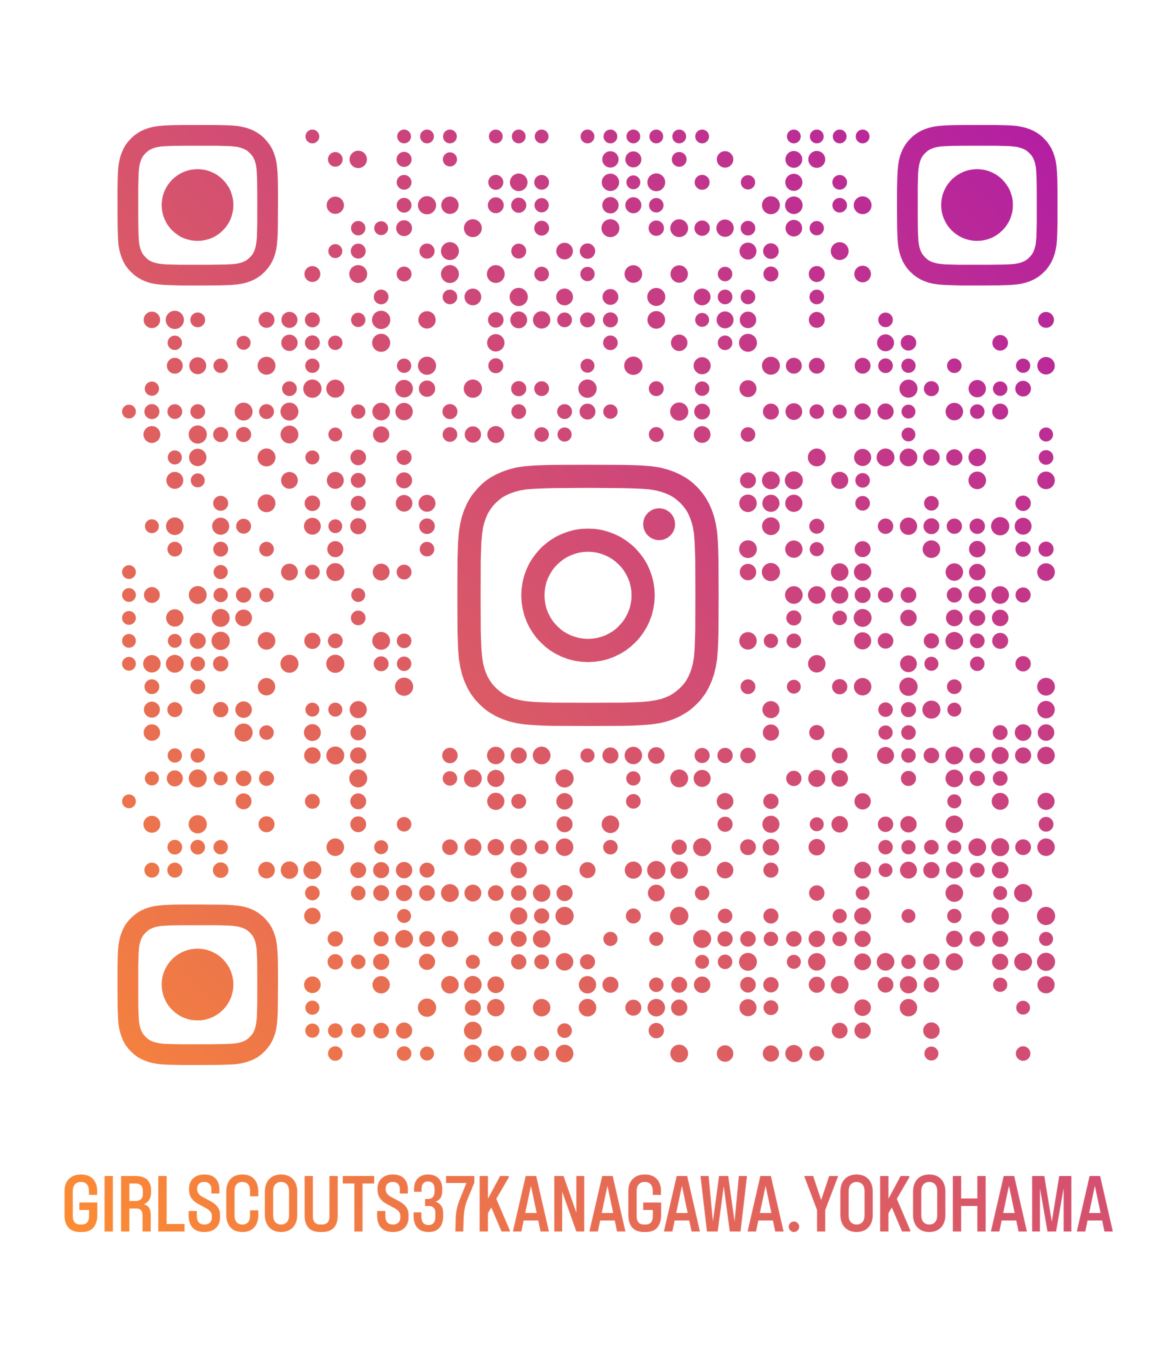 ガールスカウト神奈川県第37団公式Instagramアカウント